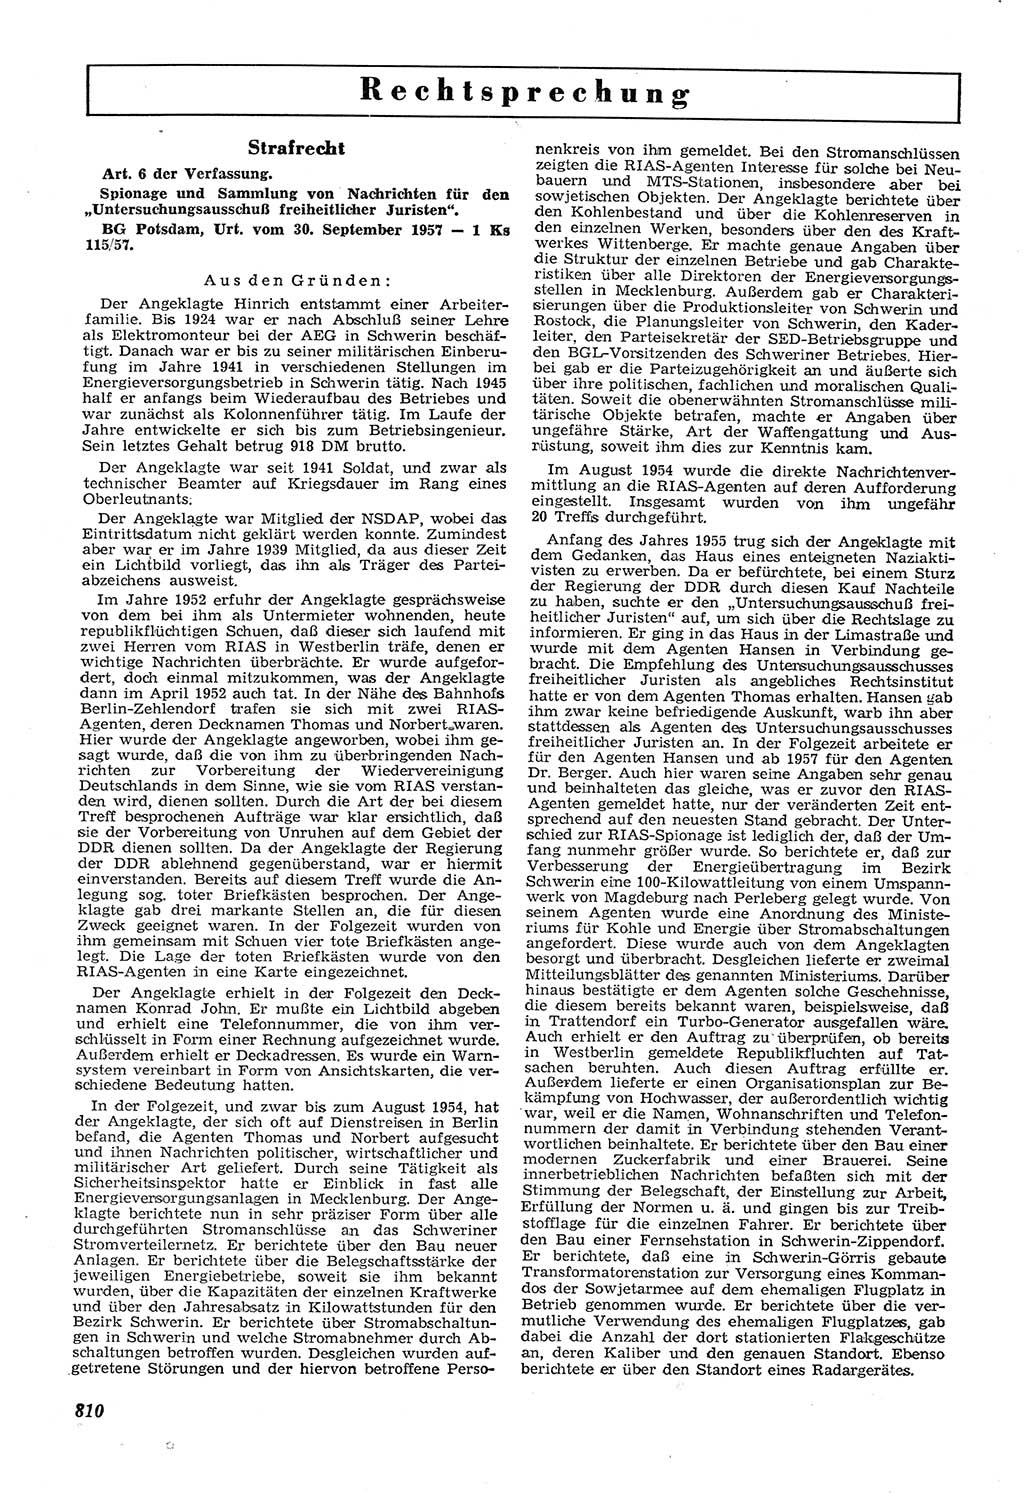 Neue Justiz (NJ), Zeitschrift für Recht und Rechtswissenschaft [Deutsche Demokratische Republik (DDR)], 11. Jahrgang 1957, Seite 810 (NJ DDR 1957, S. 810)